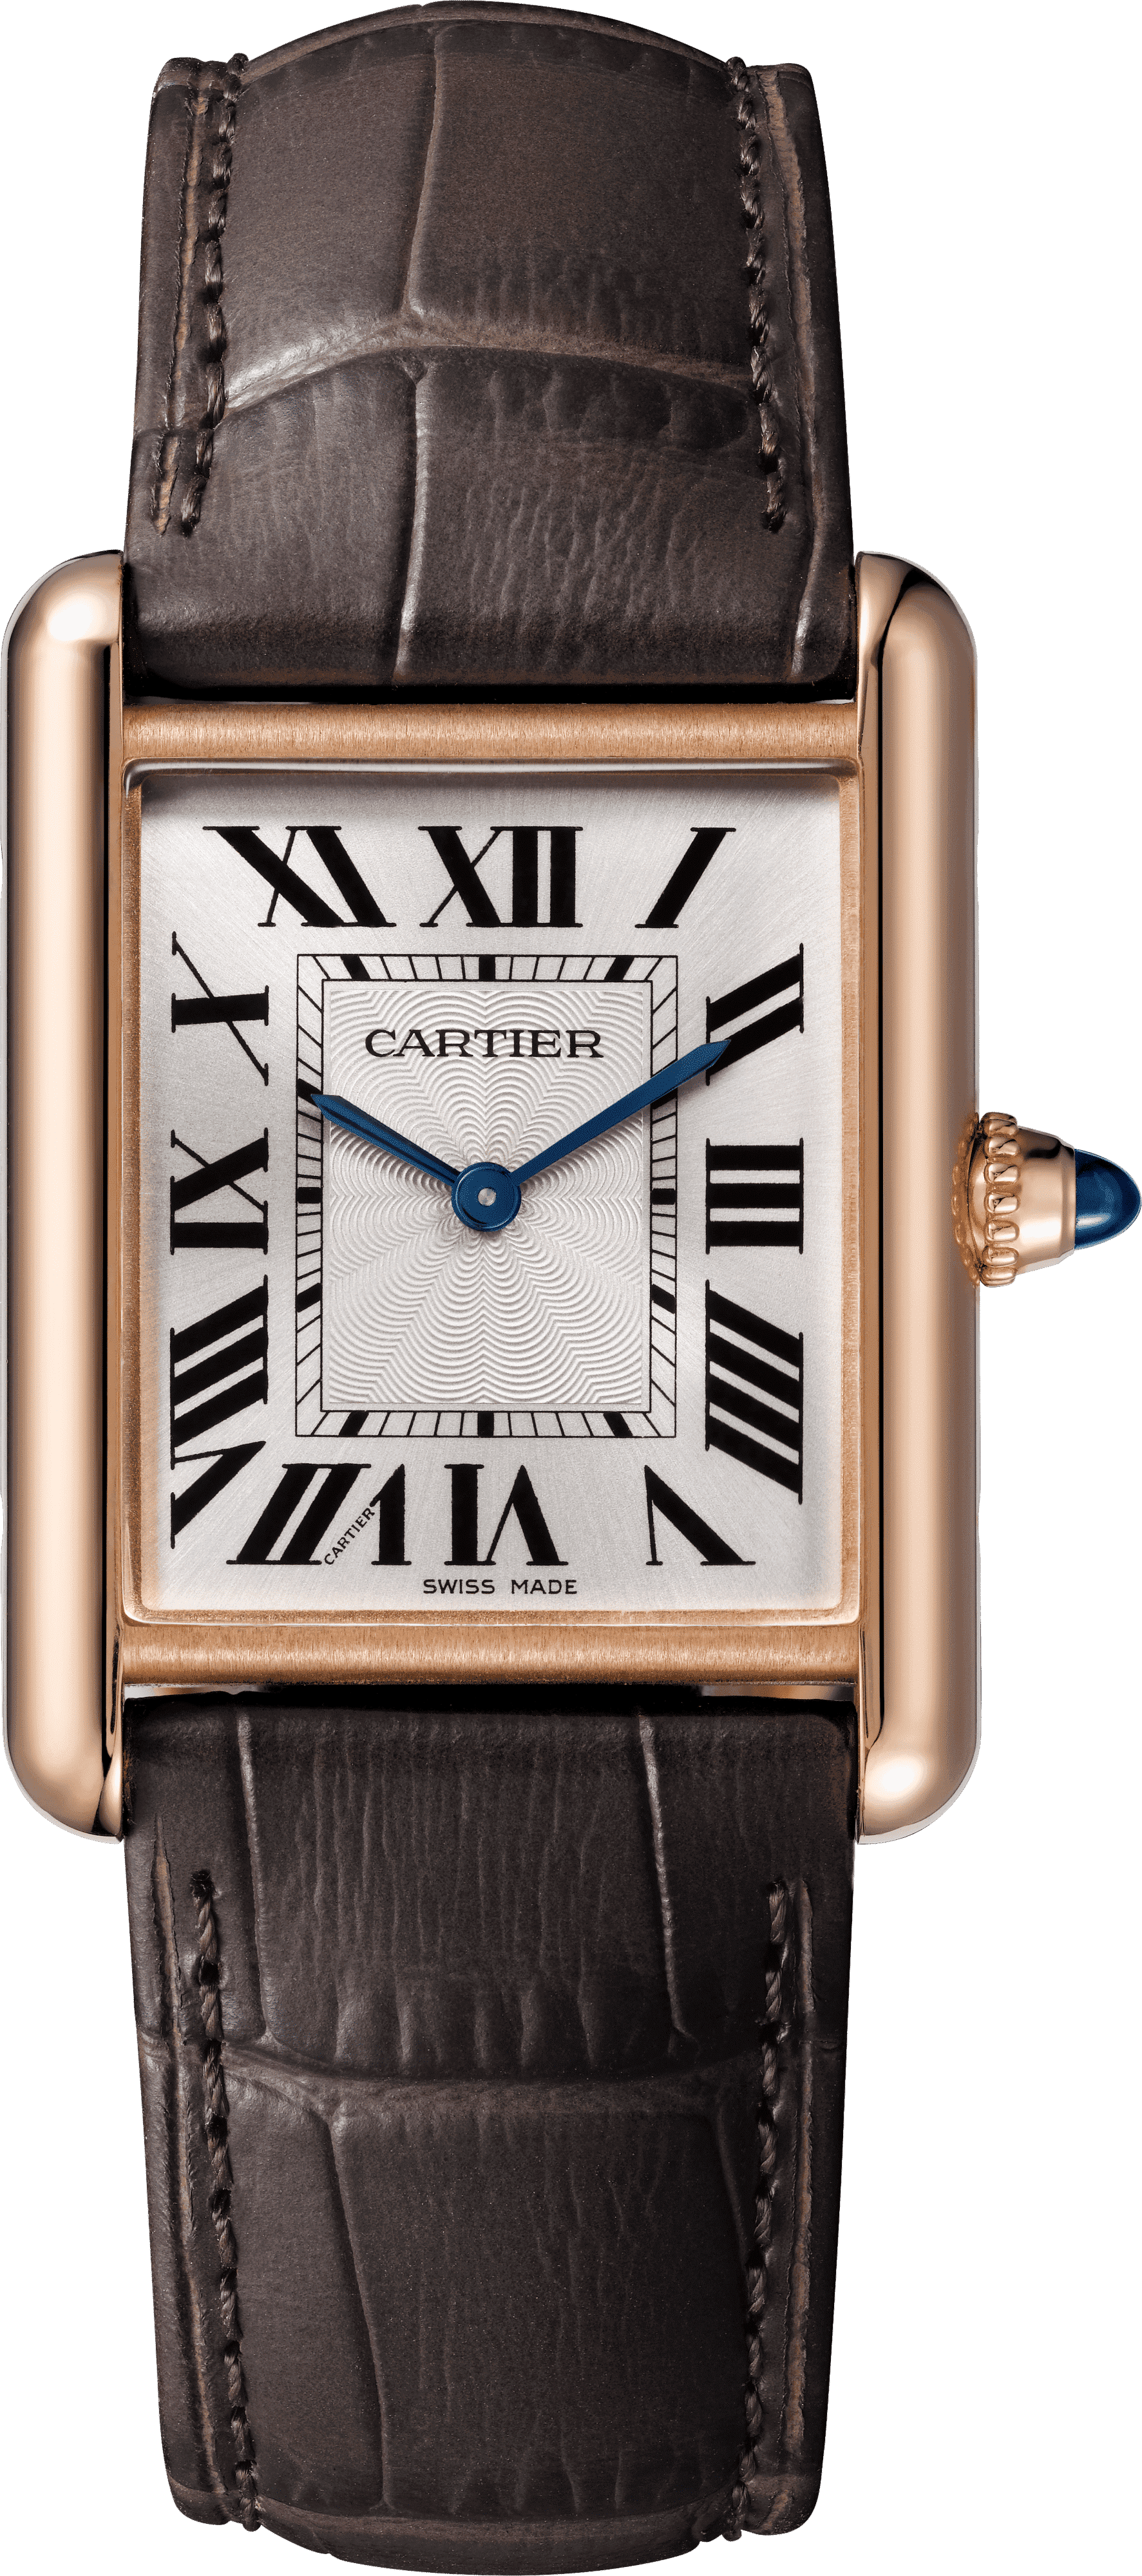 Louis Cartier Tank Watch by Cartier